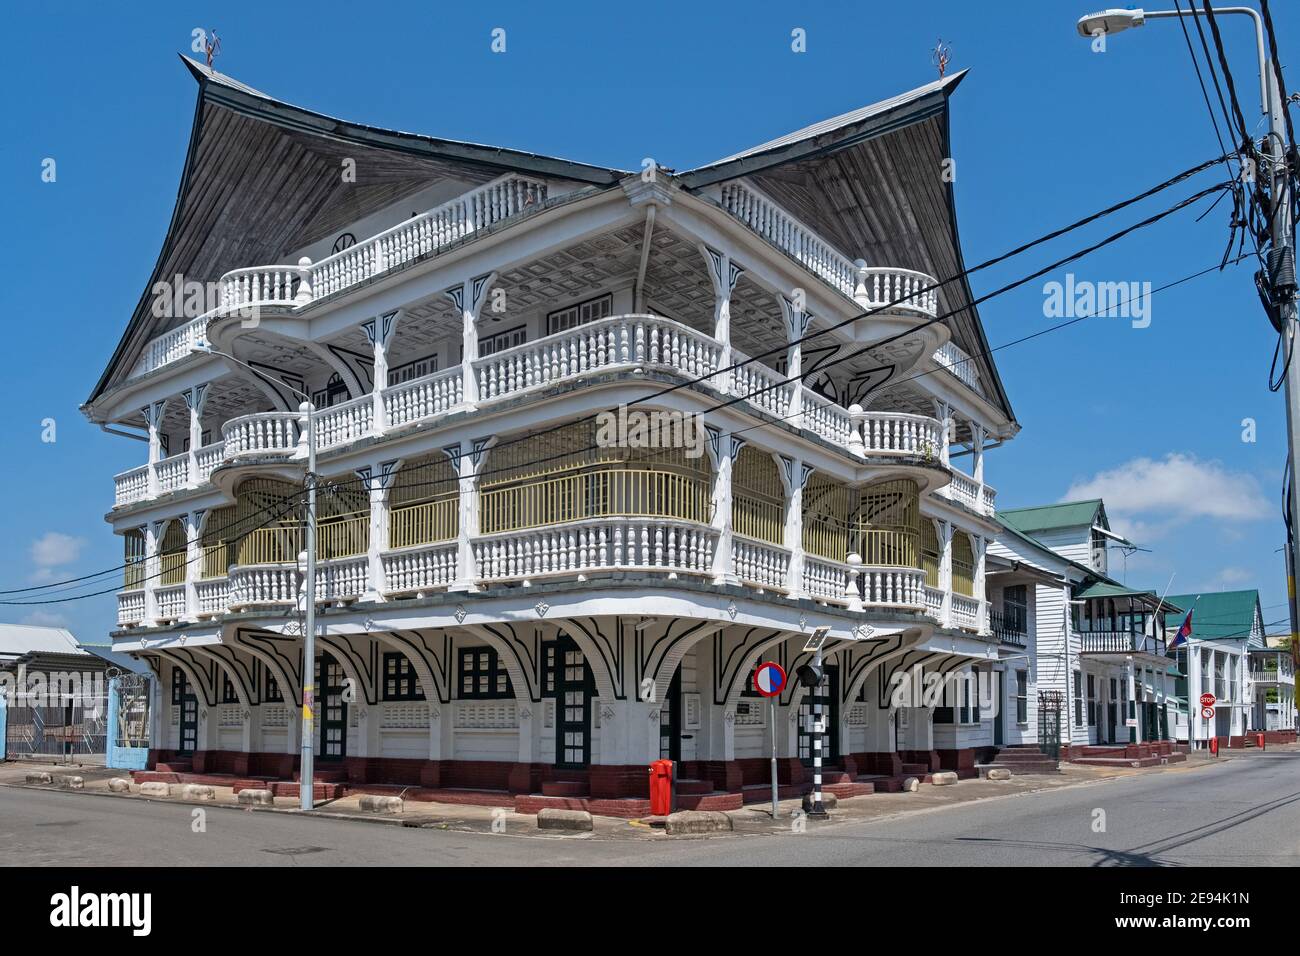 Rinnovato edificio in legno bianco in stile coloniale Olandese nella storica citta' interna di Paramaribo, nel quartiere Paramaribo, Suriname / Surinam Foto Stock